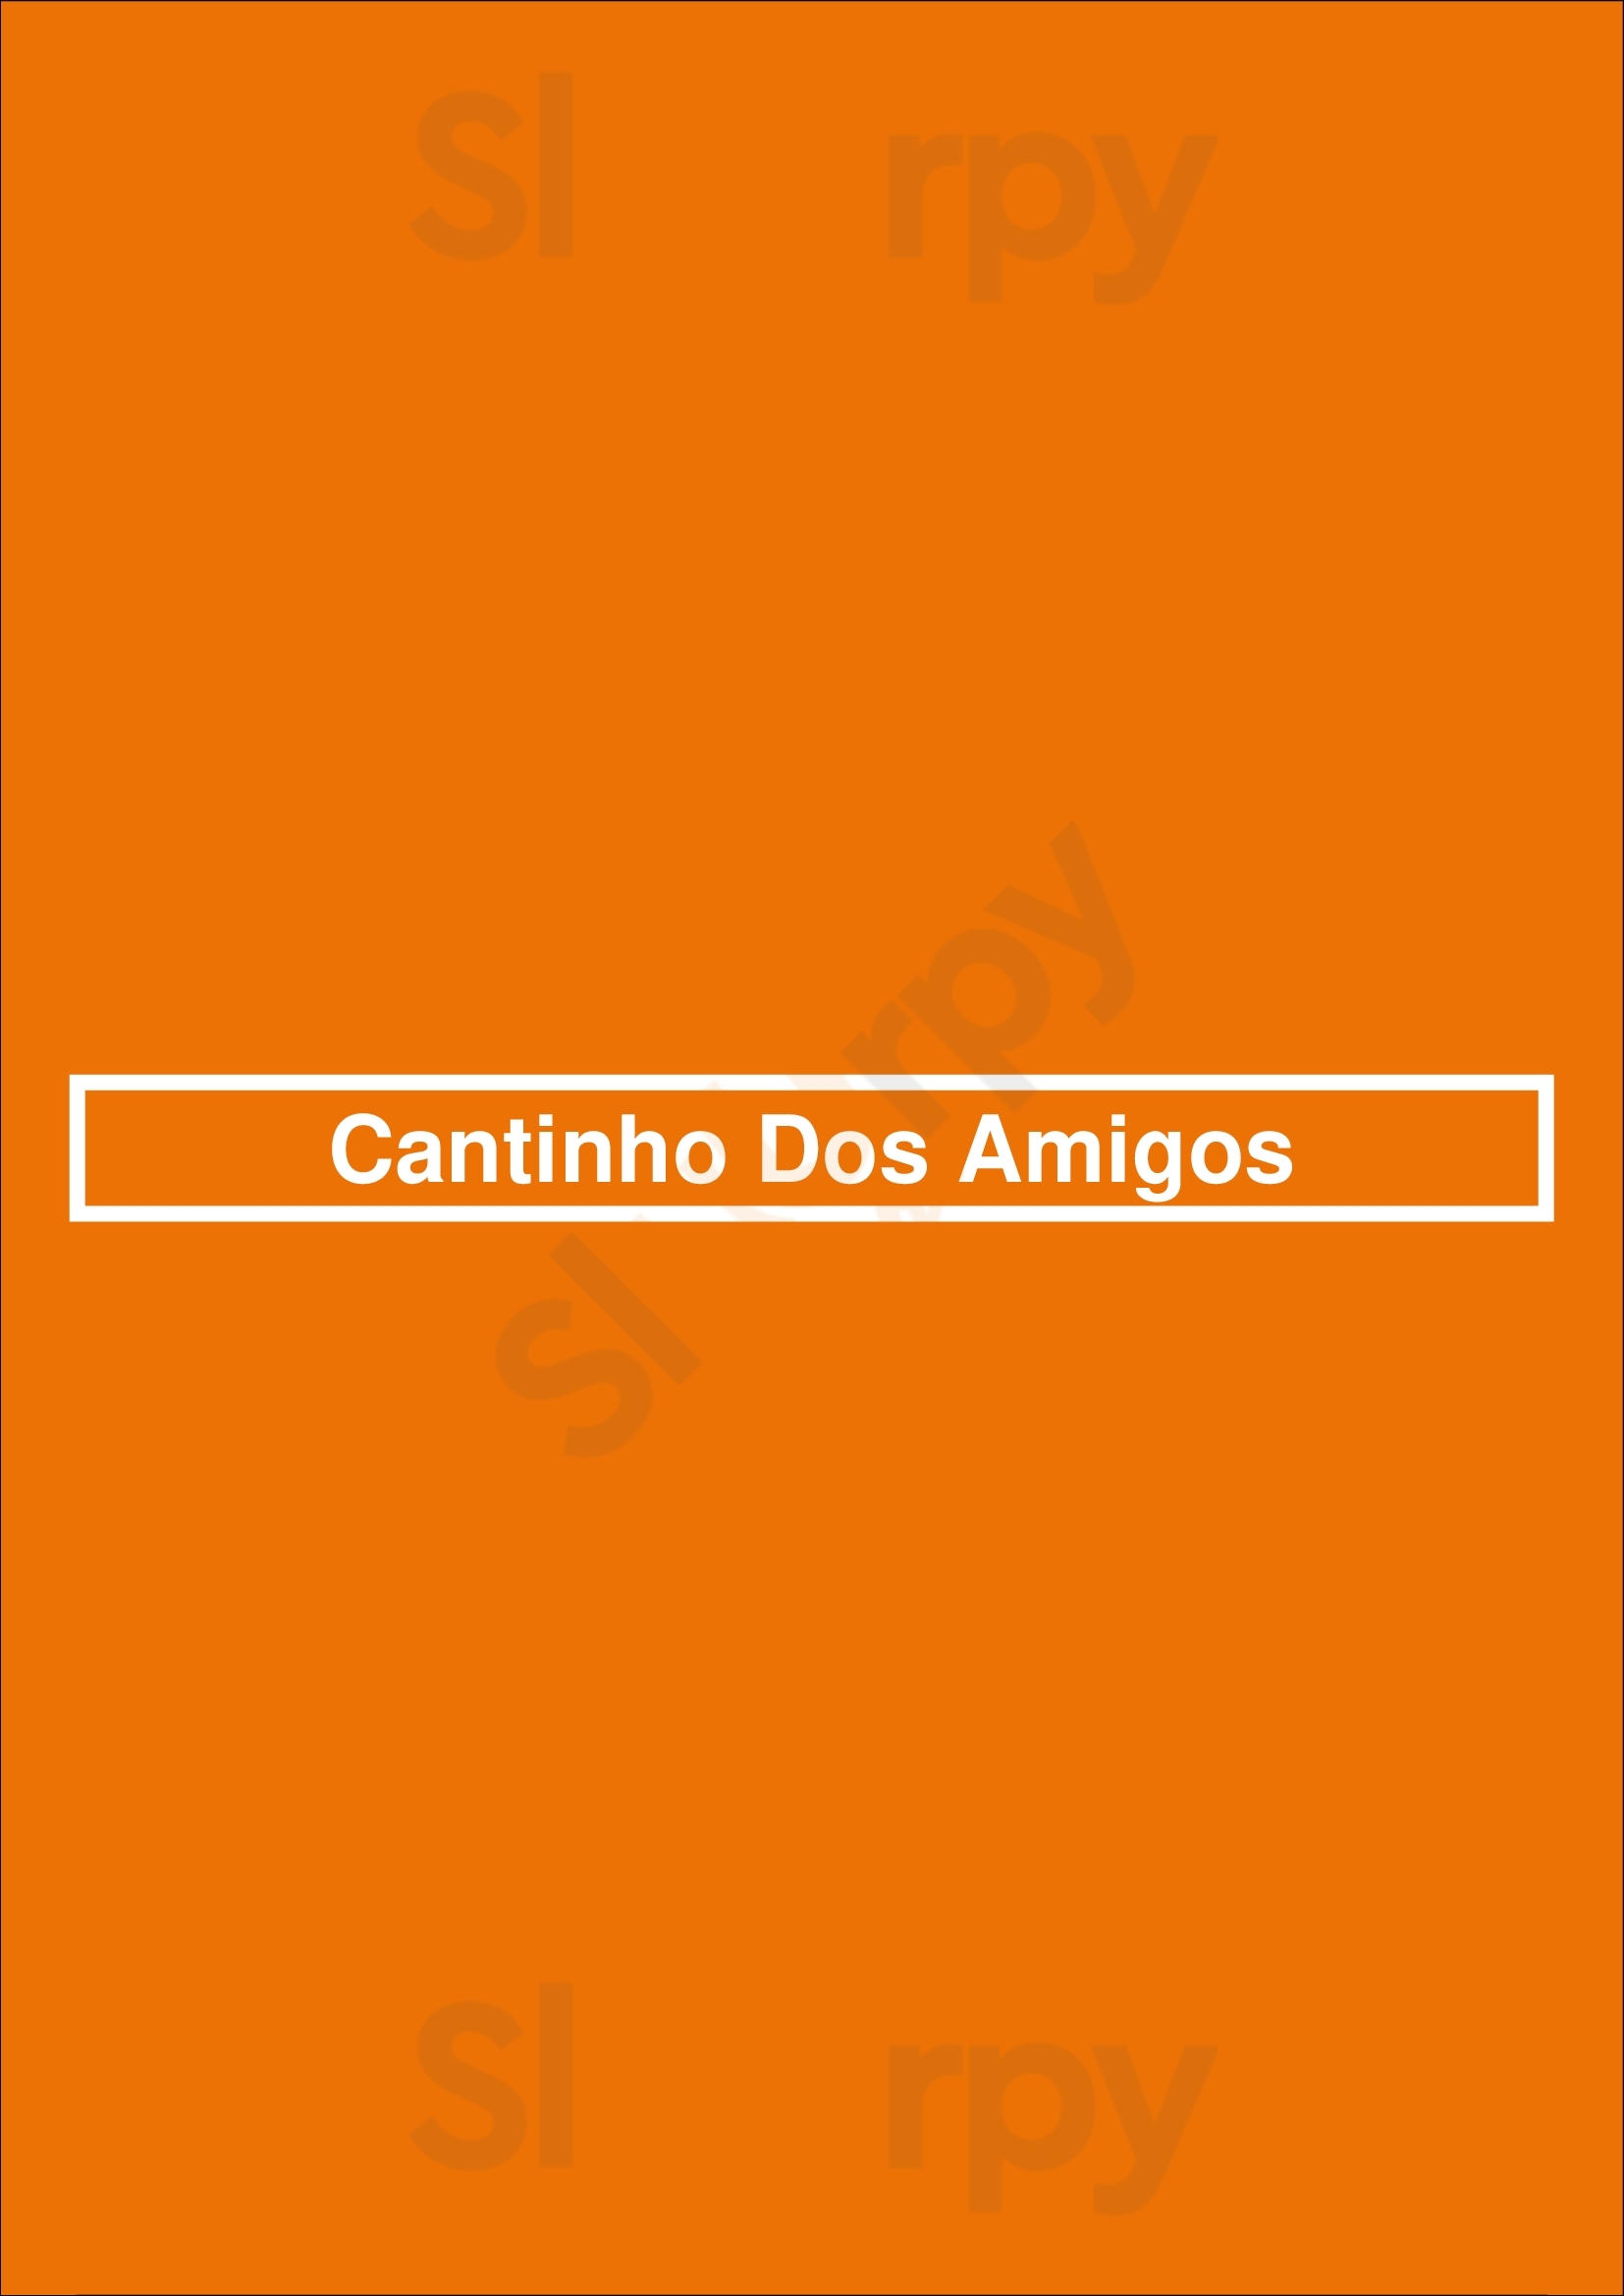 Cantinho Dos Amigos Cascais Menu - 1